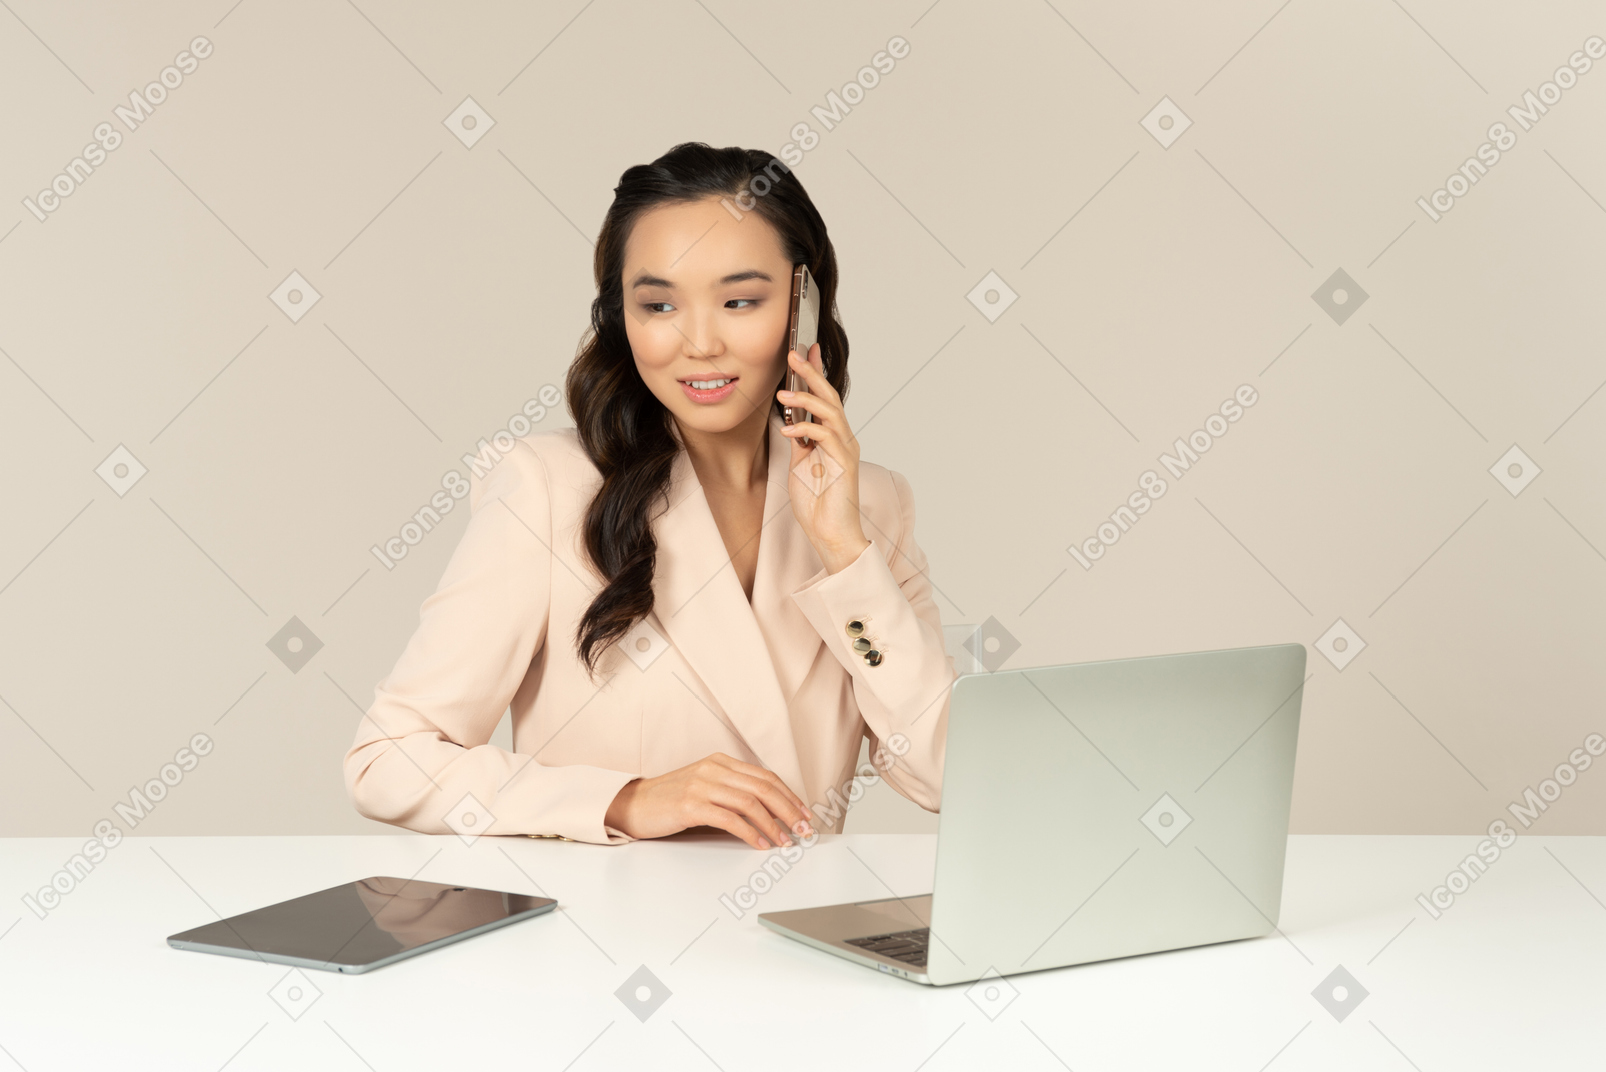 Asiatischer weiblicher büroangestellter, der am telefon spricht